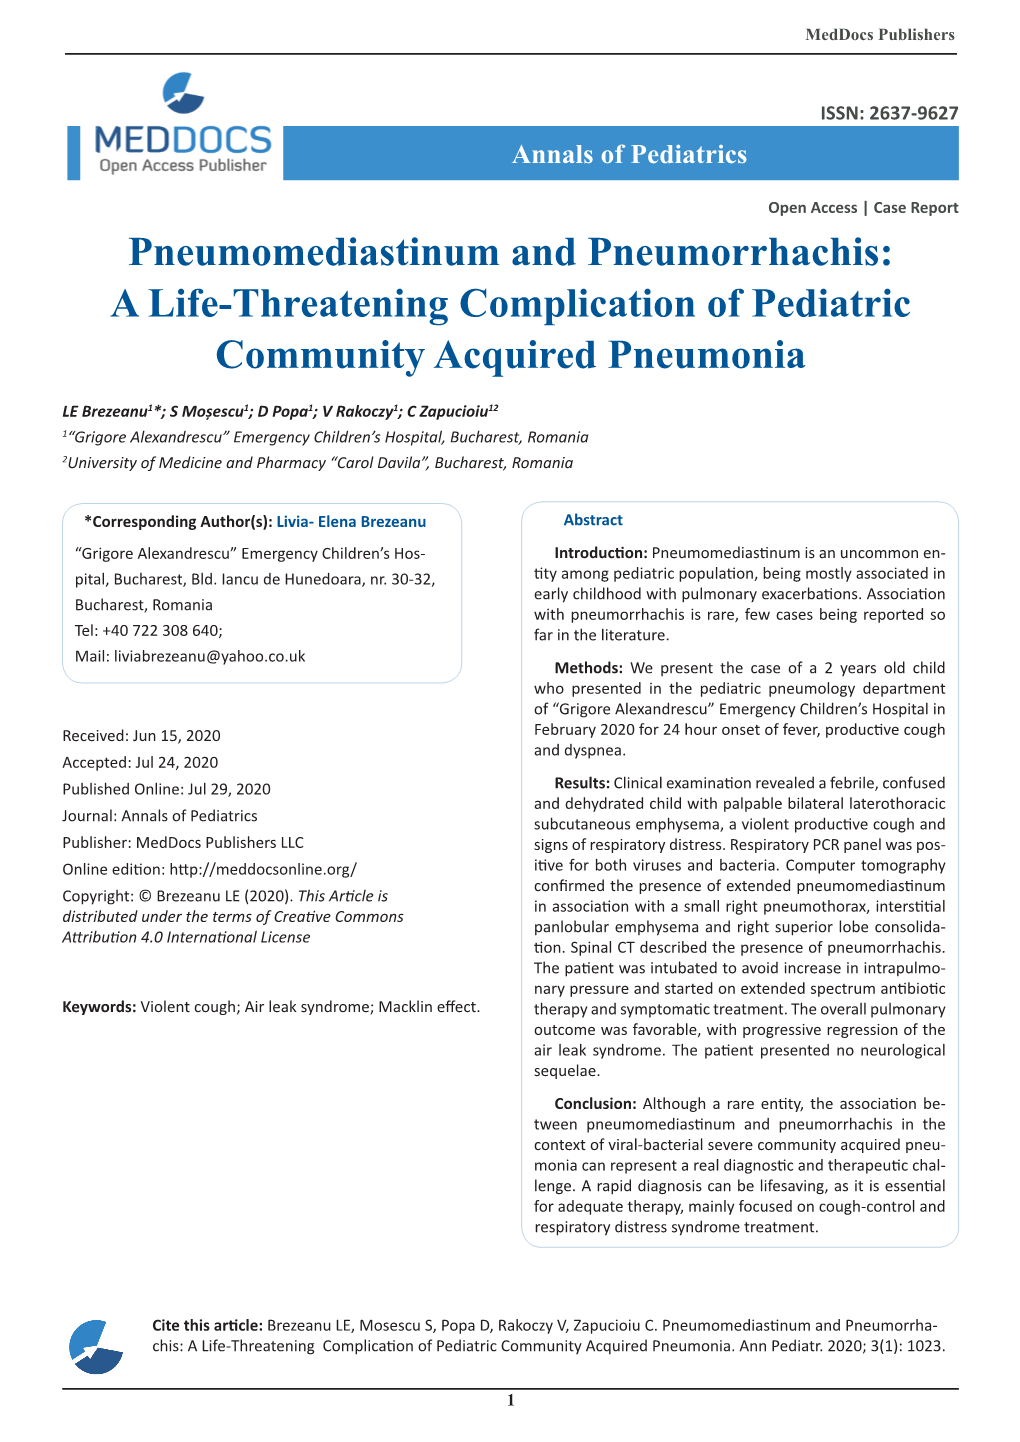 Pneumomediastinum and Pneumorrhachis: a Life-Threatening Complication of Pediatric Community Acquired Pneumonia